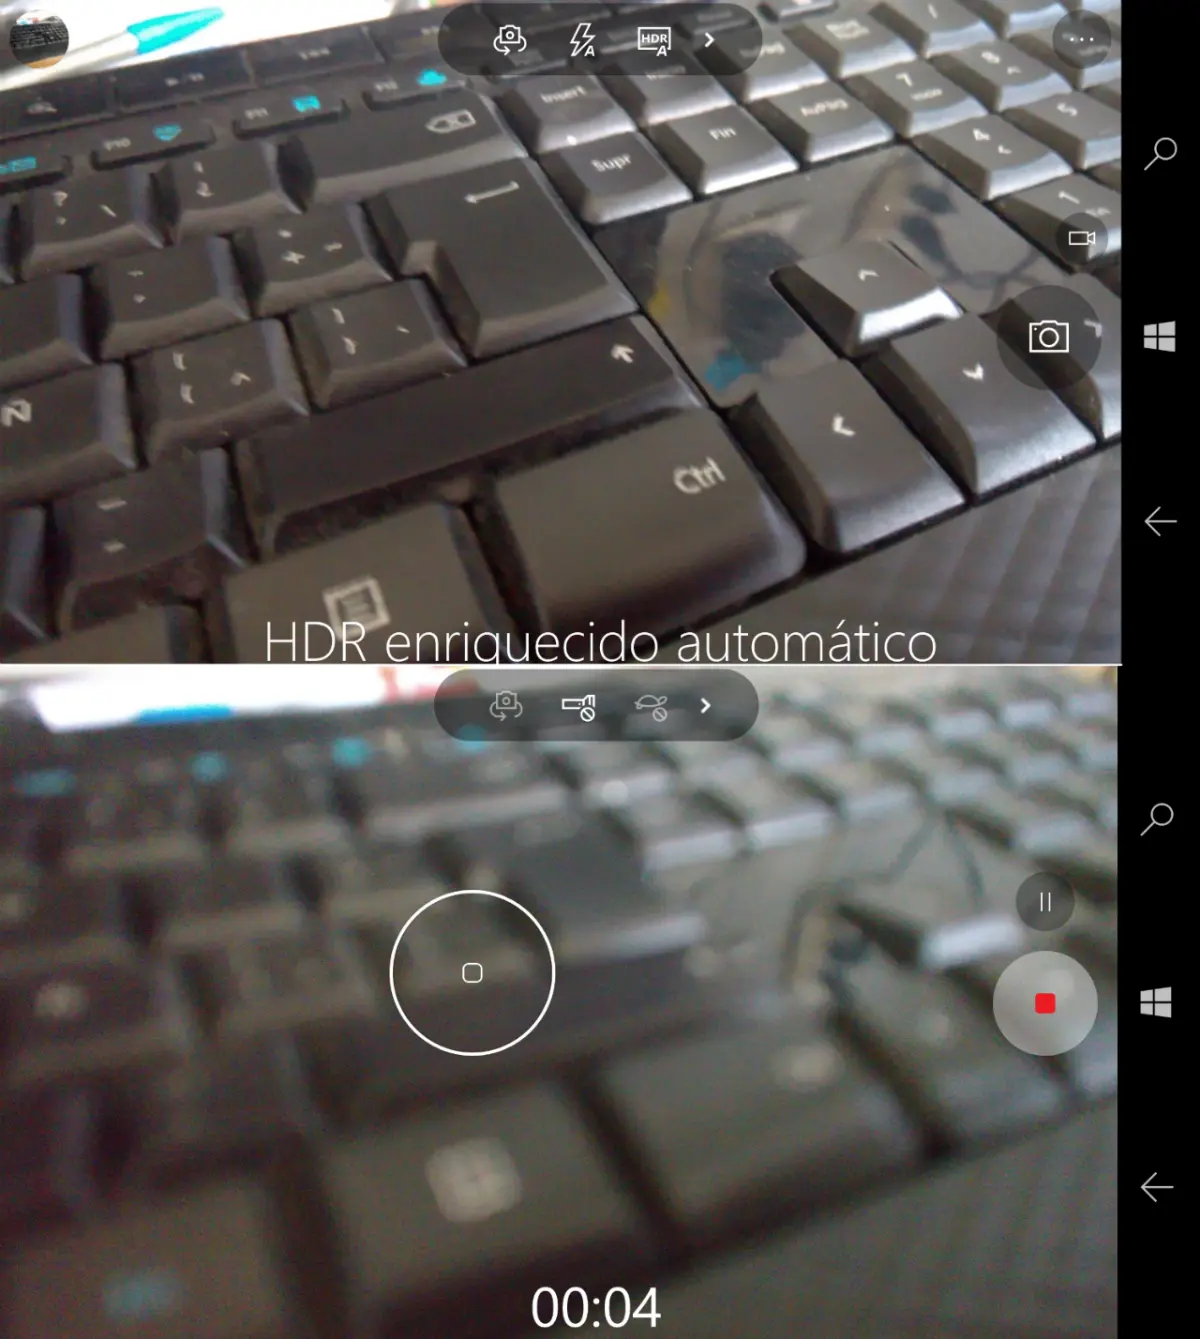 camara windows 10 Mobile Rich HDR pausa videos